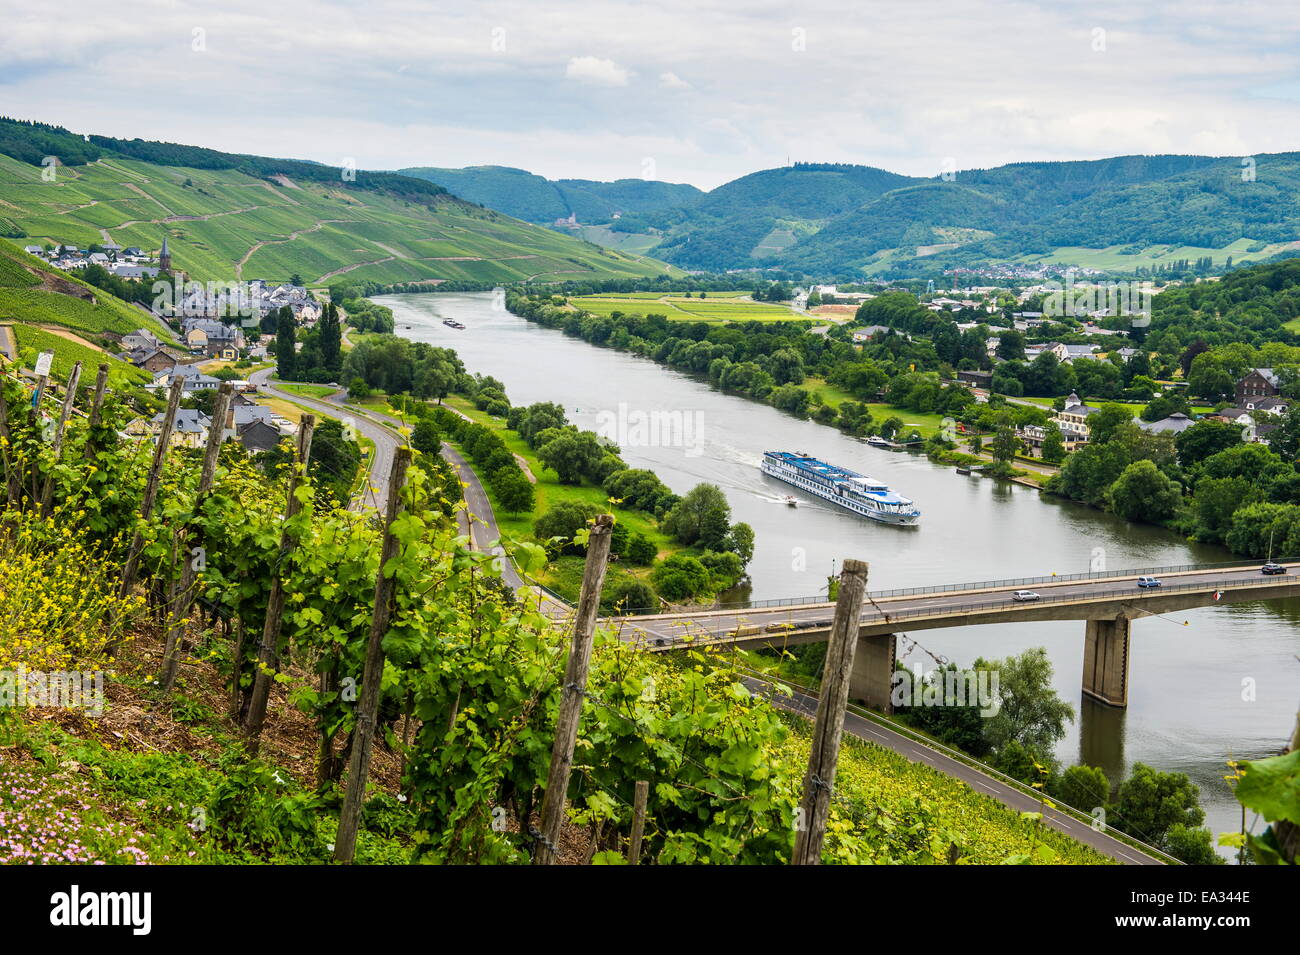 Bateau de croisière passant le vignoble près de Lieser dans la vallée de la Moselle, Rhénanie-Palatinat, Allemagne, Europe Banque D'Images